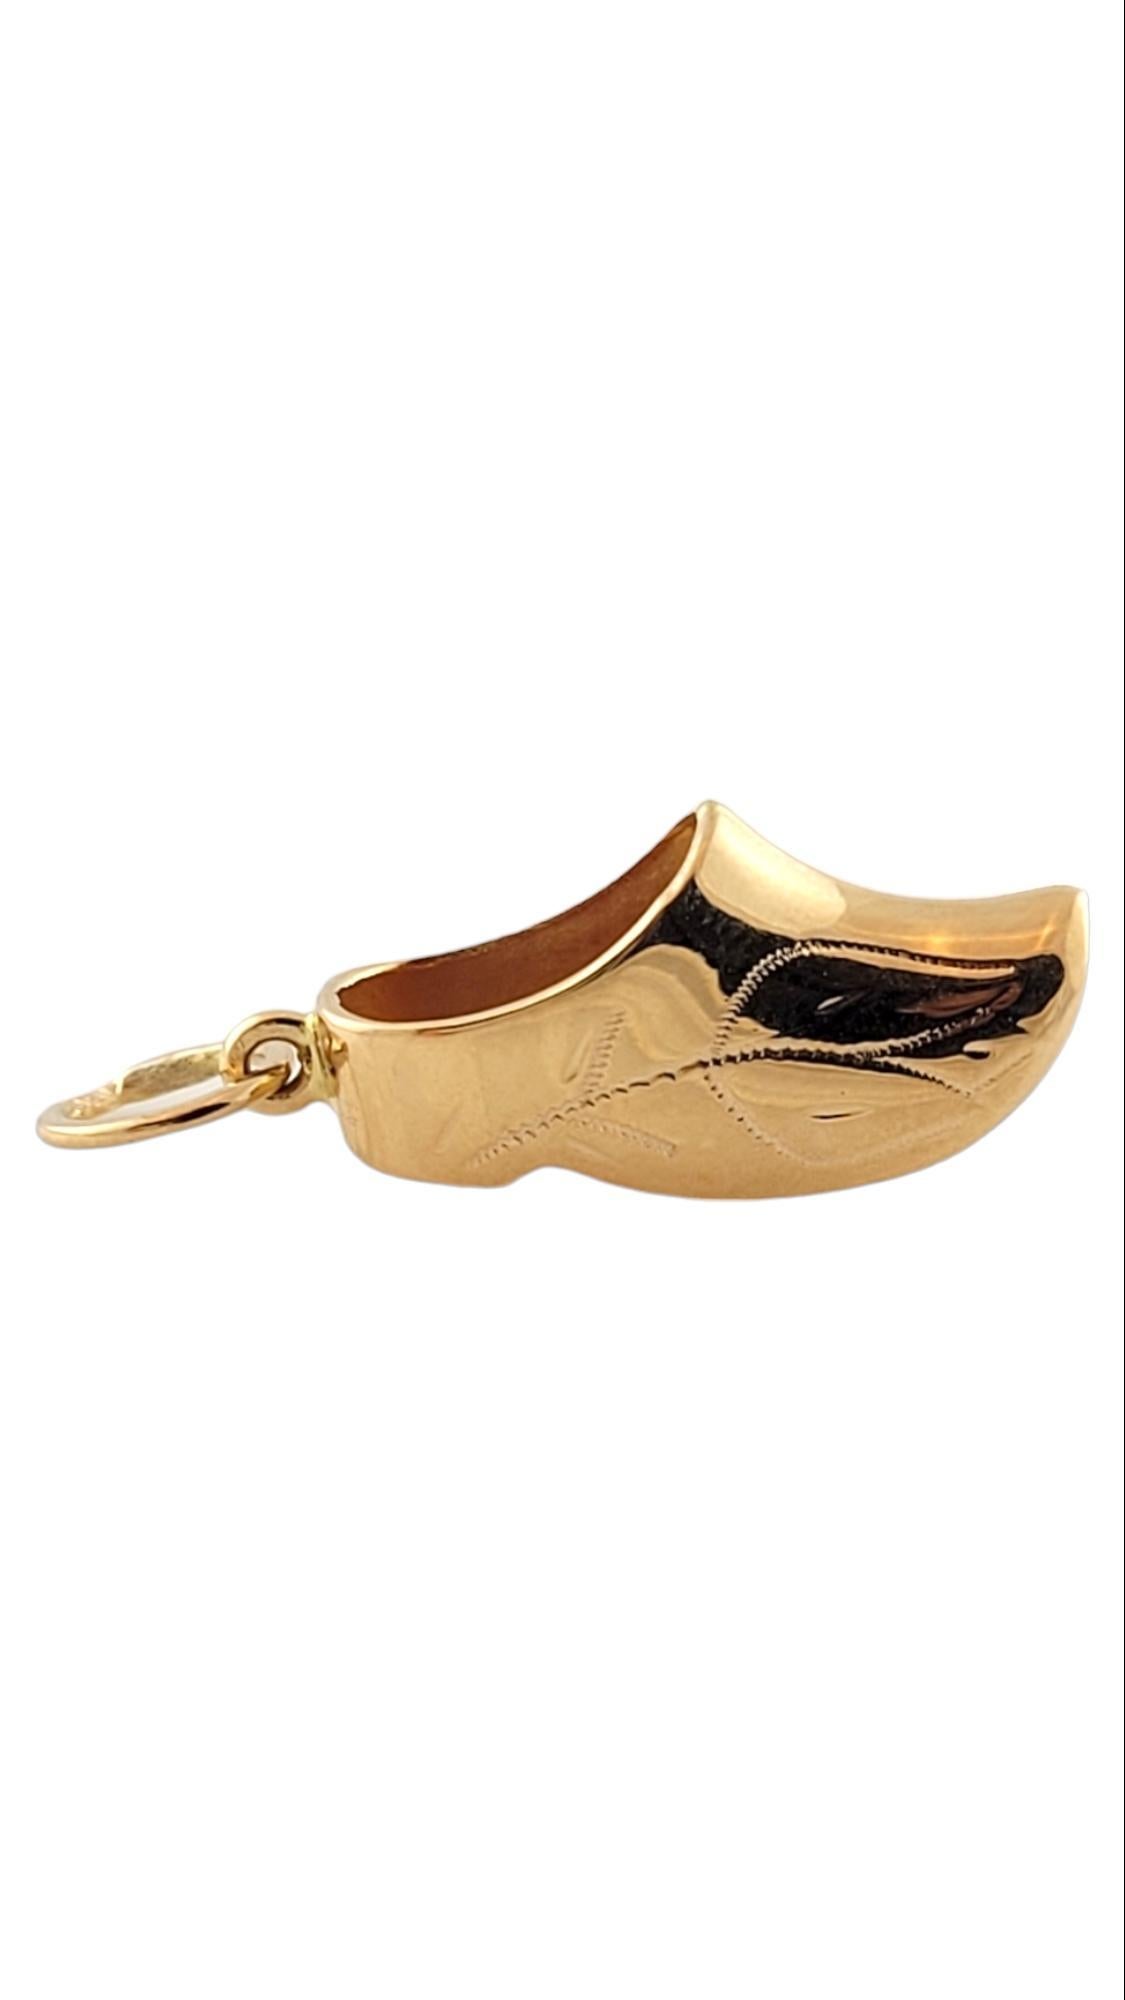 Cette magnifique breloque de chaussure hollandaise est réalisée en or jaune 18 carats et présente de petits détails d'une tulipe sur les deux côtés de la chaussure.

Taille : 23mm X 10mm

Poids : 1,6 gr / 1,0 dwt

Poinçon : 18K

Très bon état,